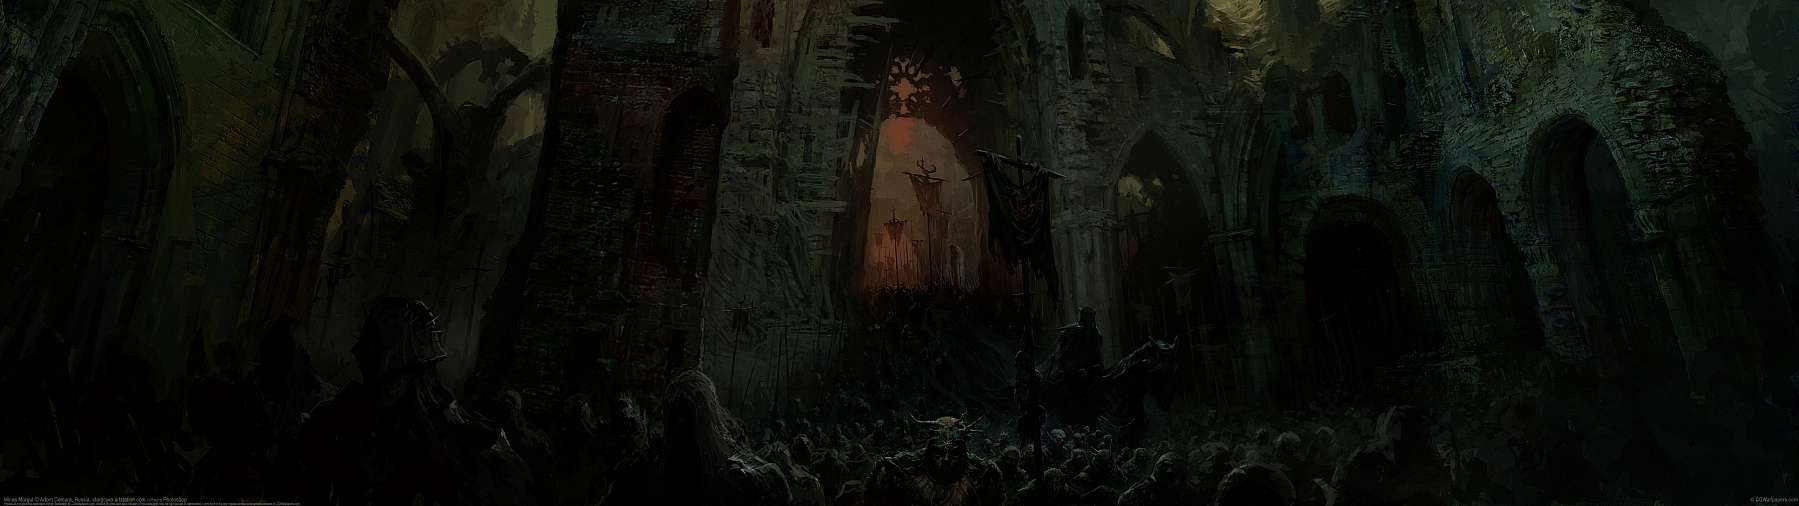 Minas Morgul ultralarge fond d'cran